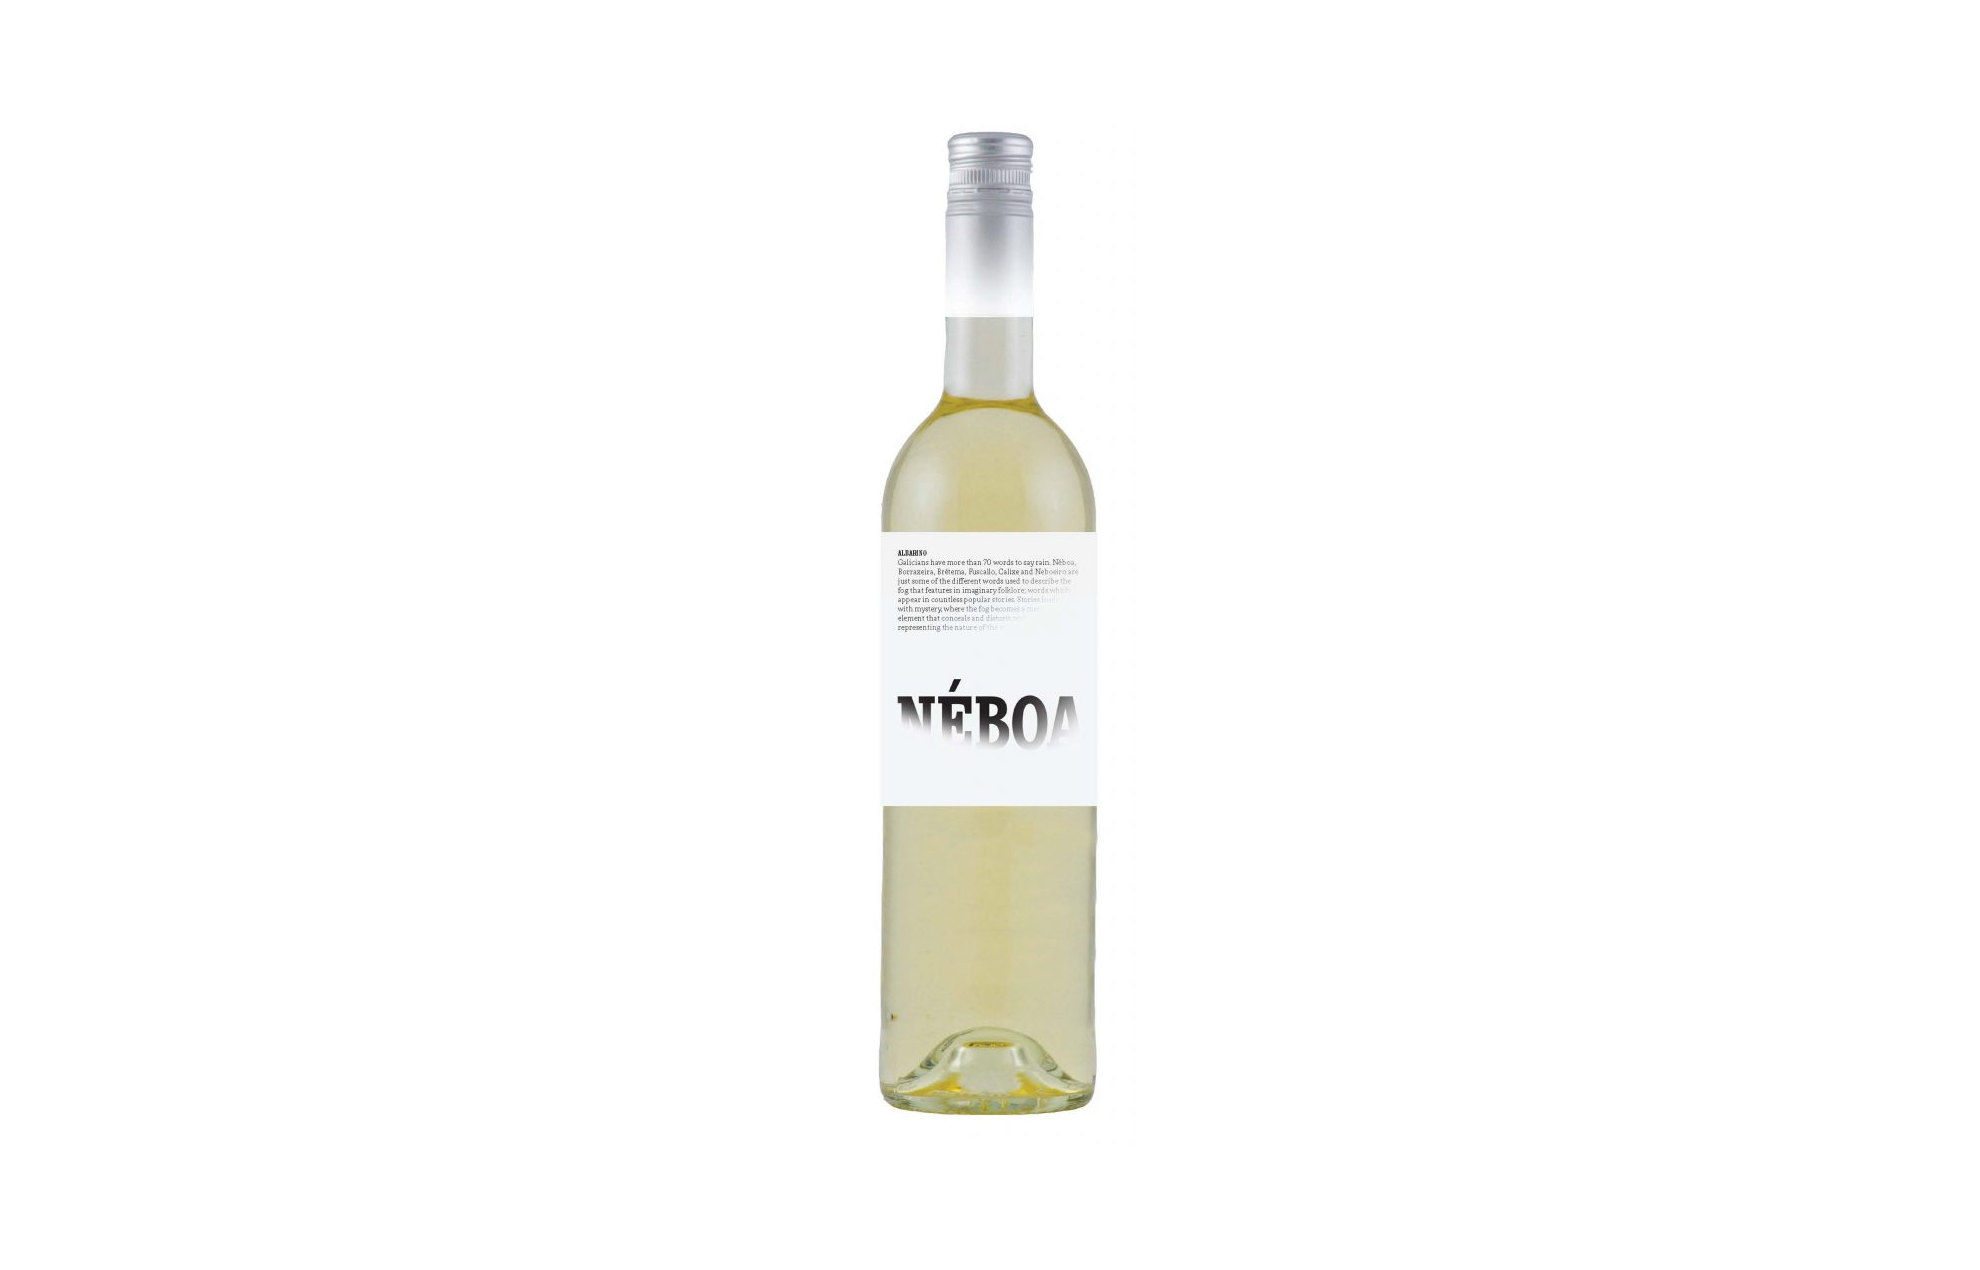 Bouteille de vin blanc NÉBOA 2017 Albarino, Rias Baixas, Espagne.